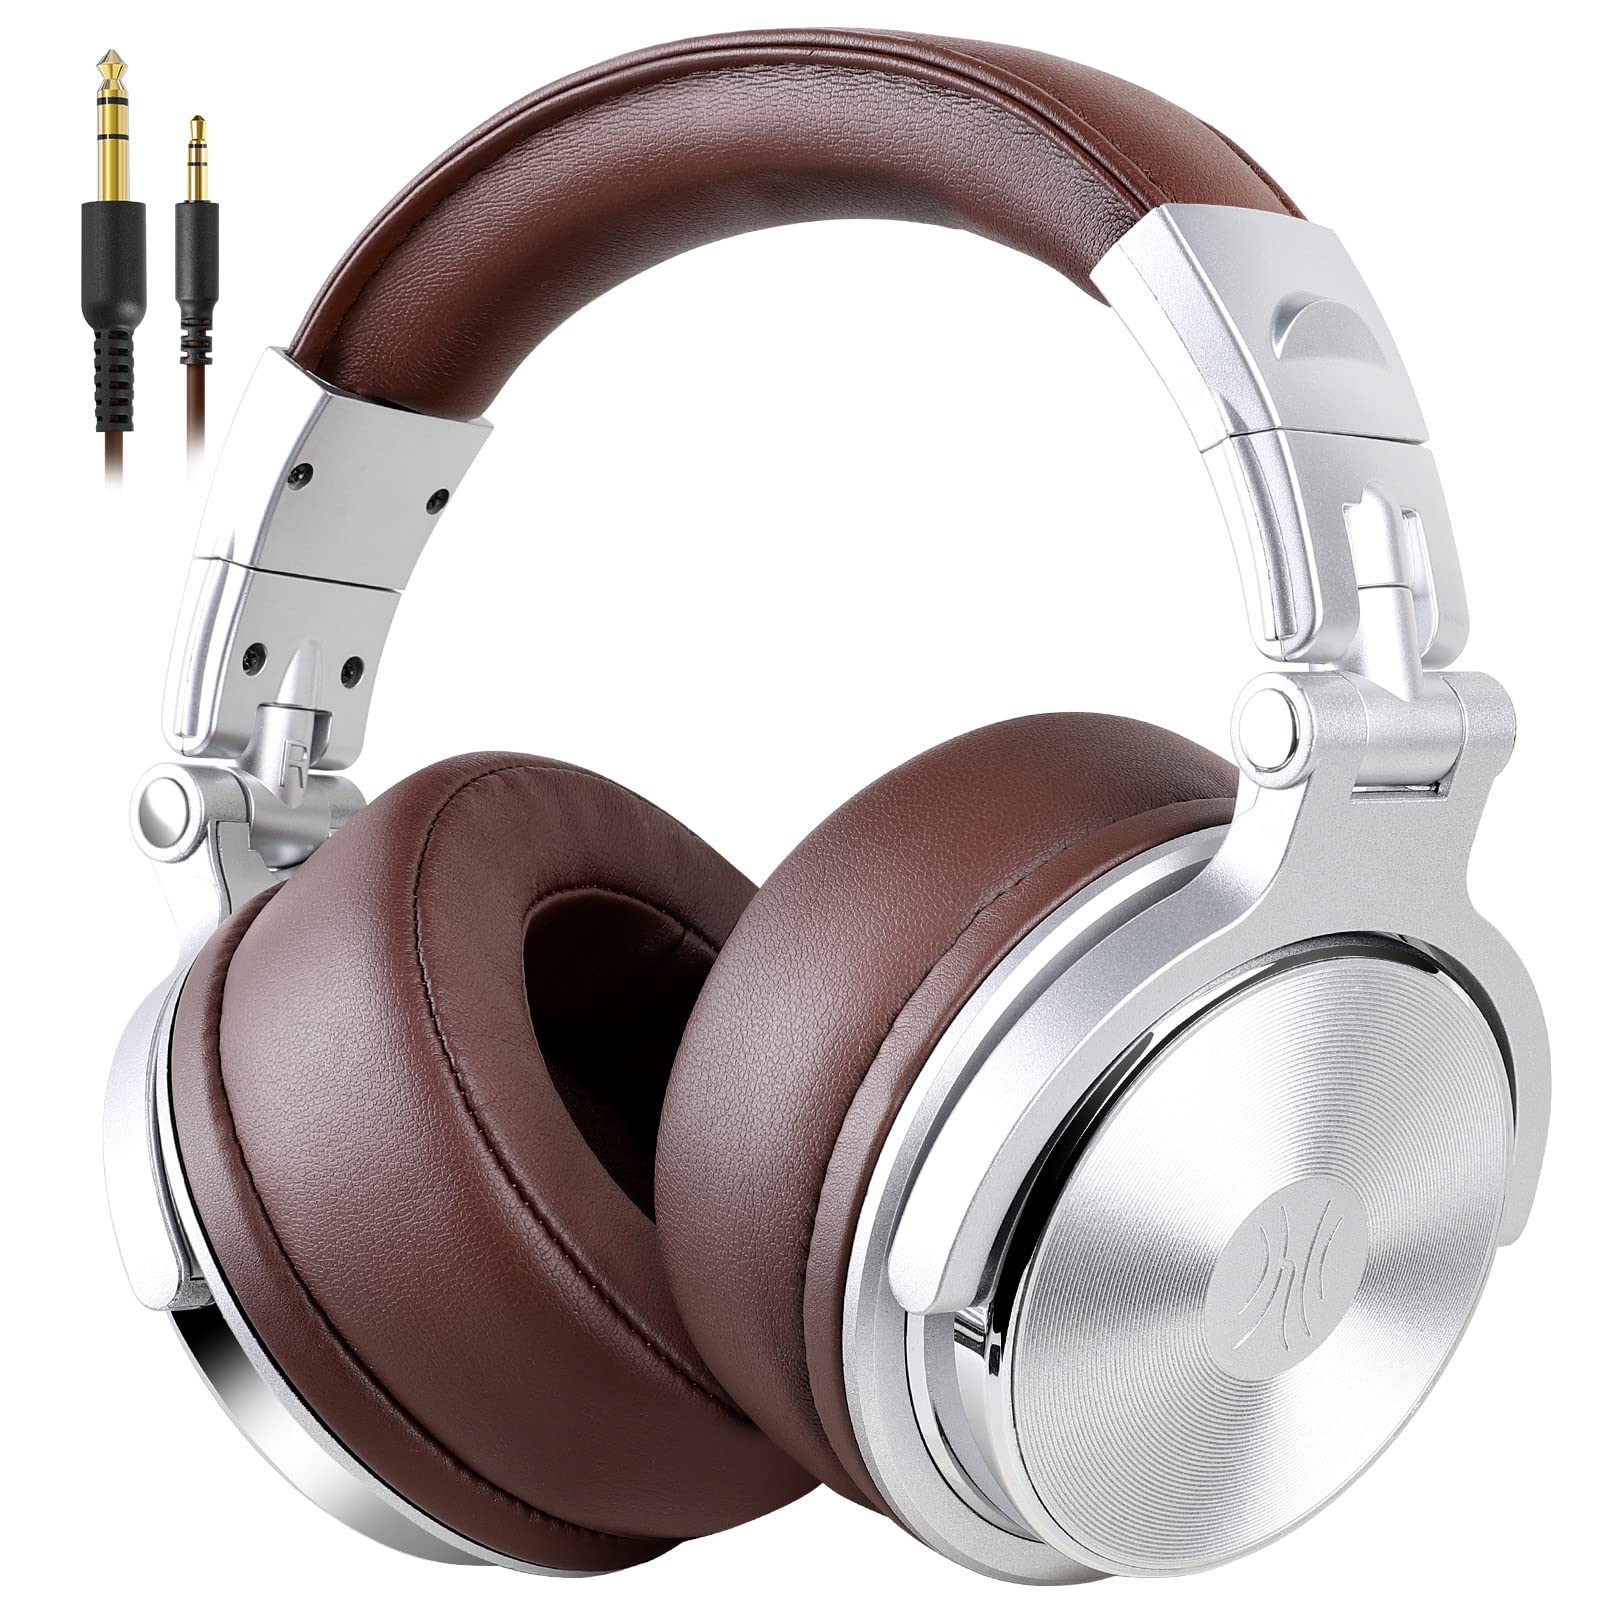 OneOdio 包耳式耳机、带 50 毫米驱动器的有线高级立体声耳机、带蛋白质耳罩的可折叠舒适耳机和用于录制监...